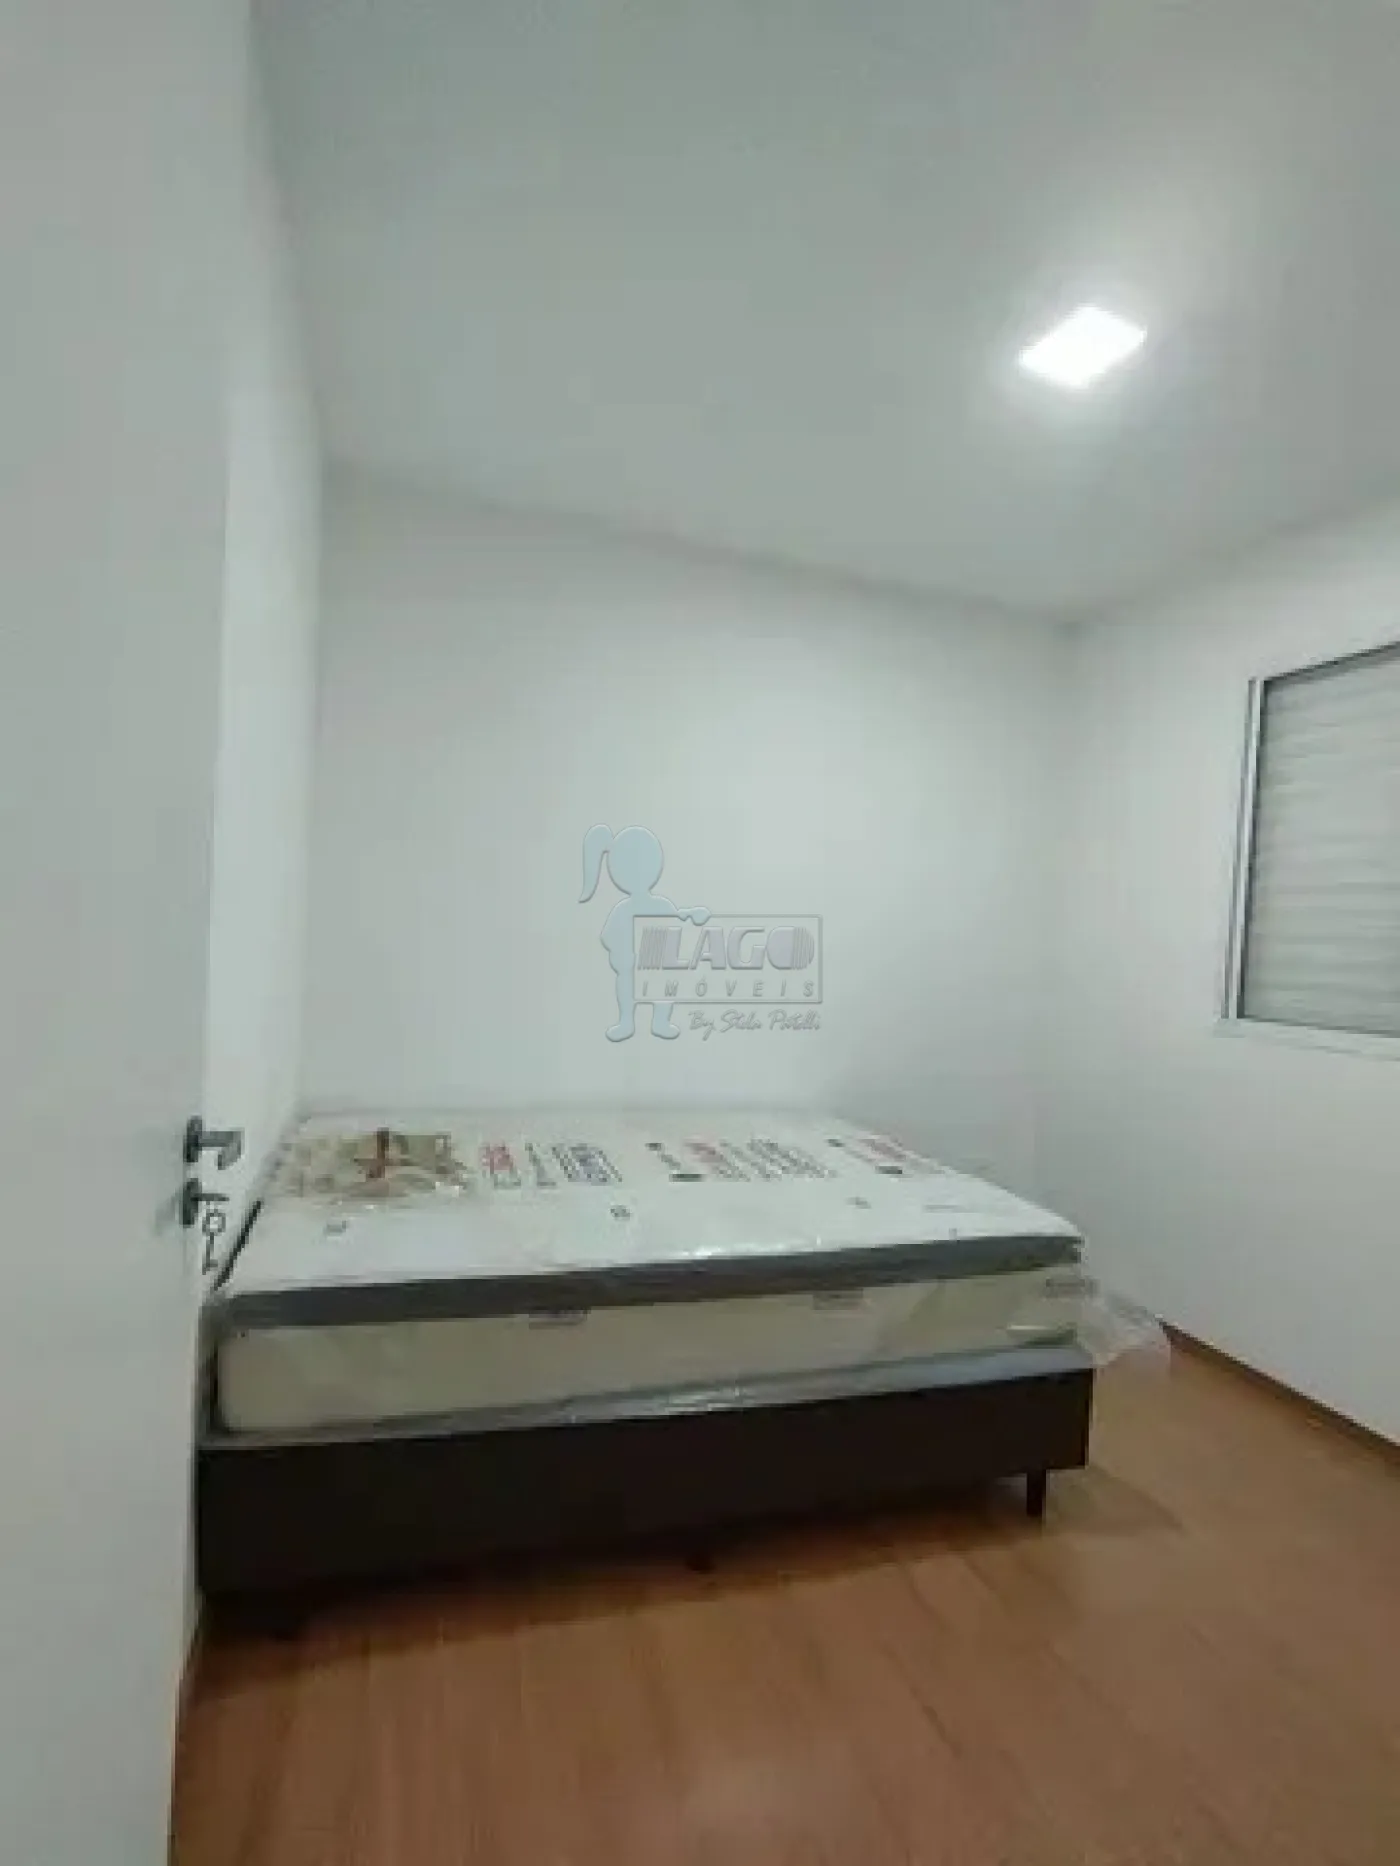 Alugar Apartamento / Padrão em Ribeirão Preto R$ 800,00 - Foto 7